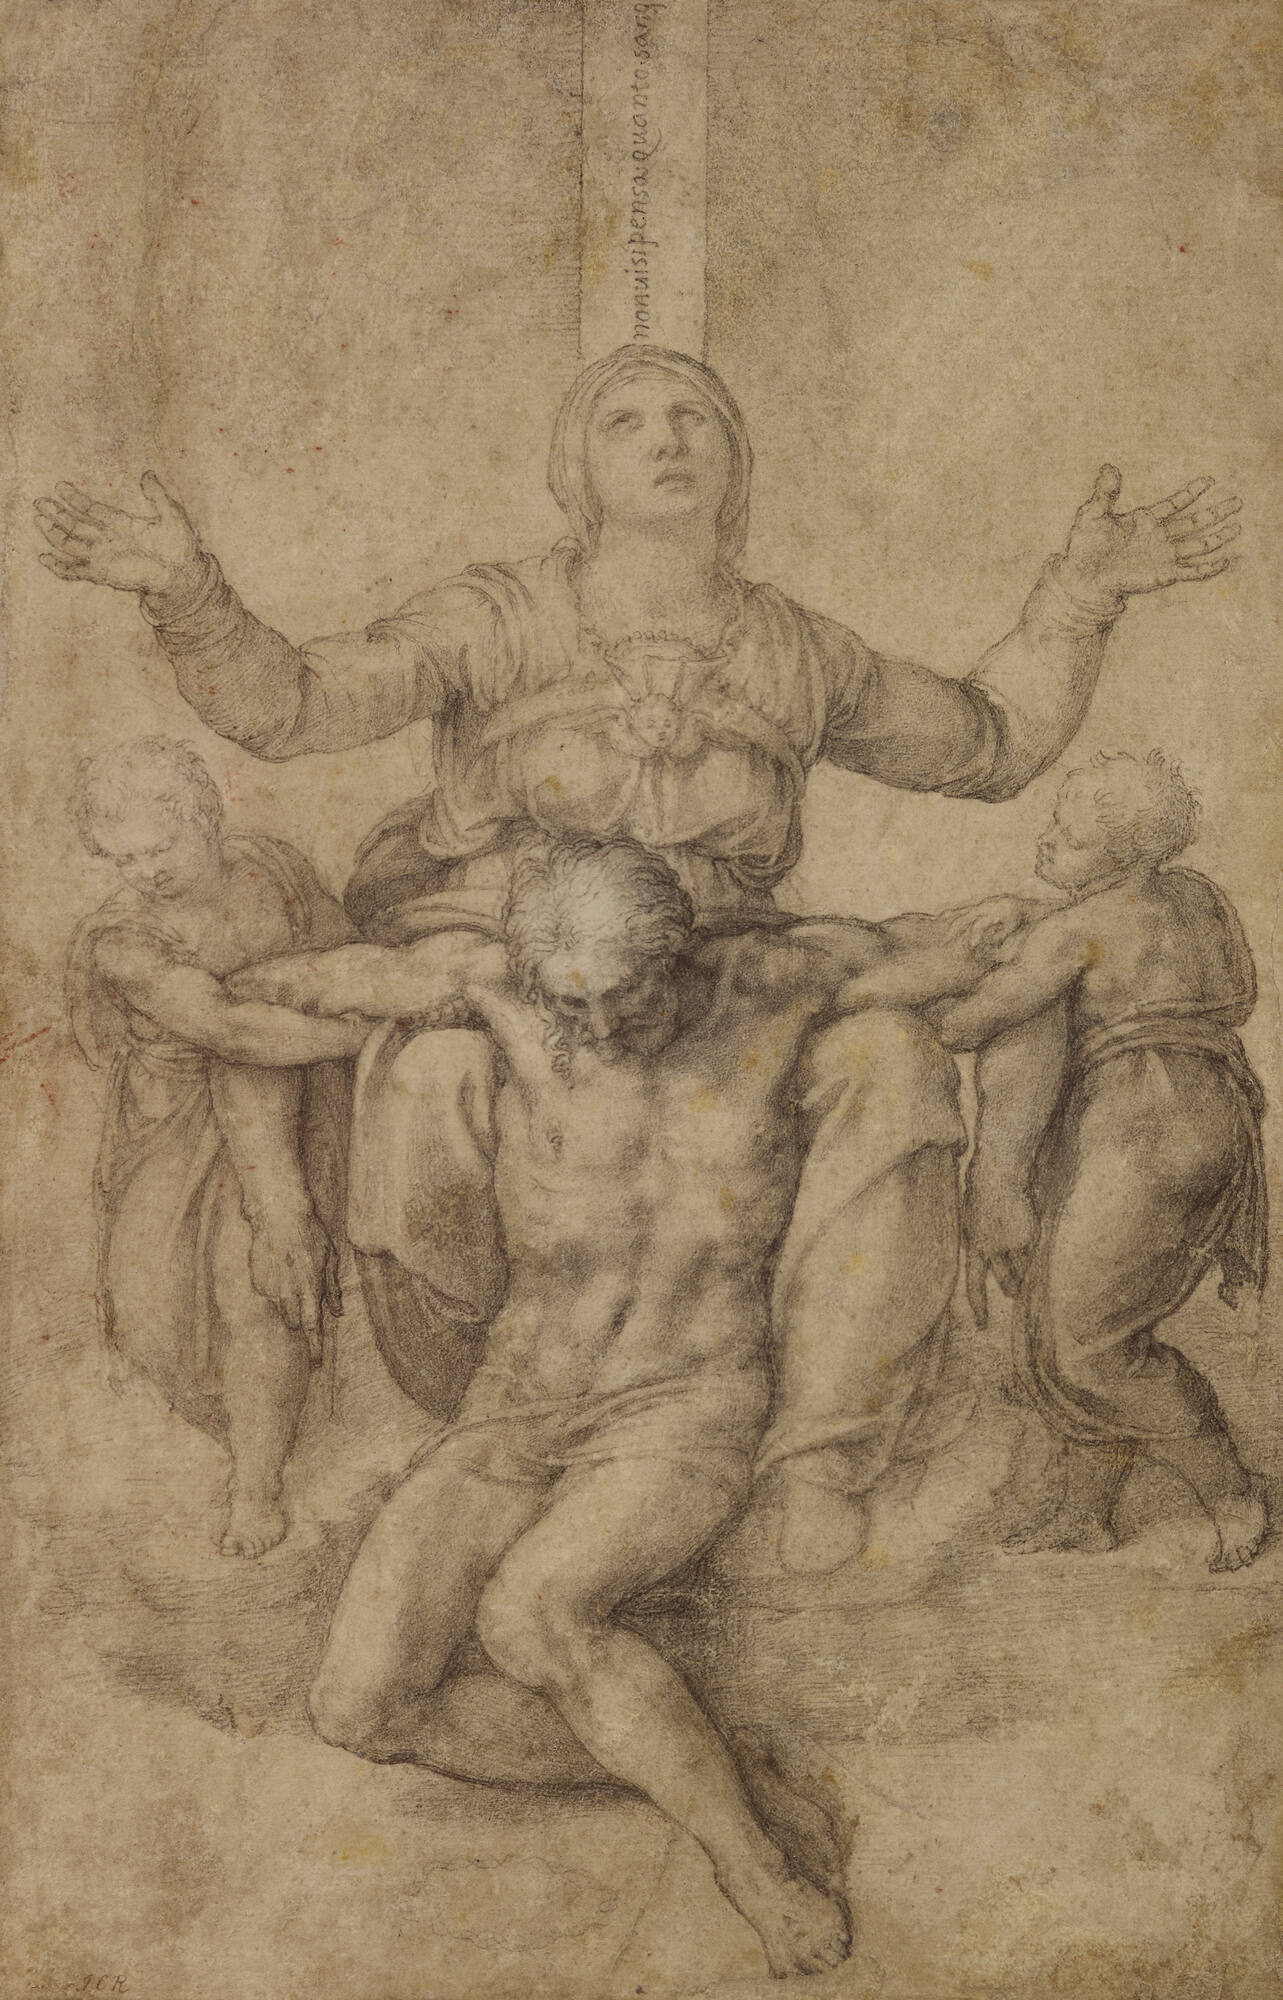 Did Michelangelo have an eraser? – From Jane M. Mason